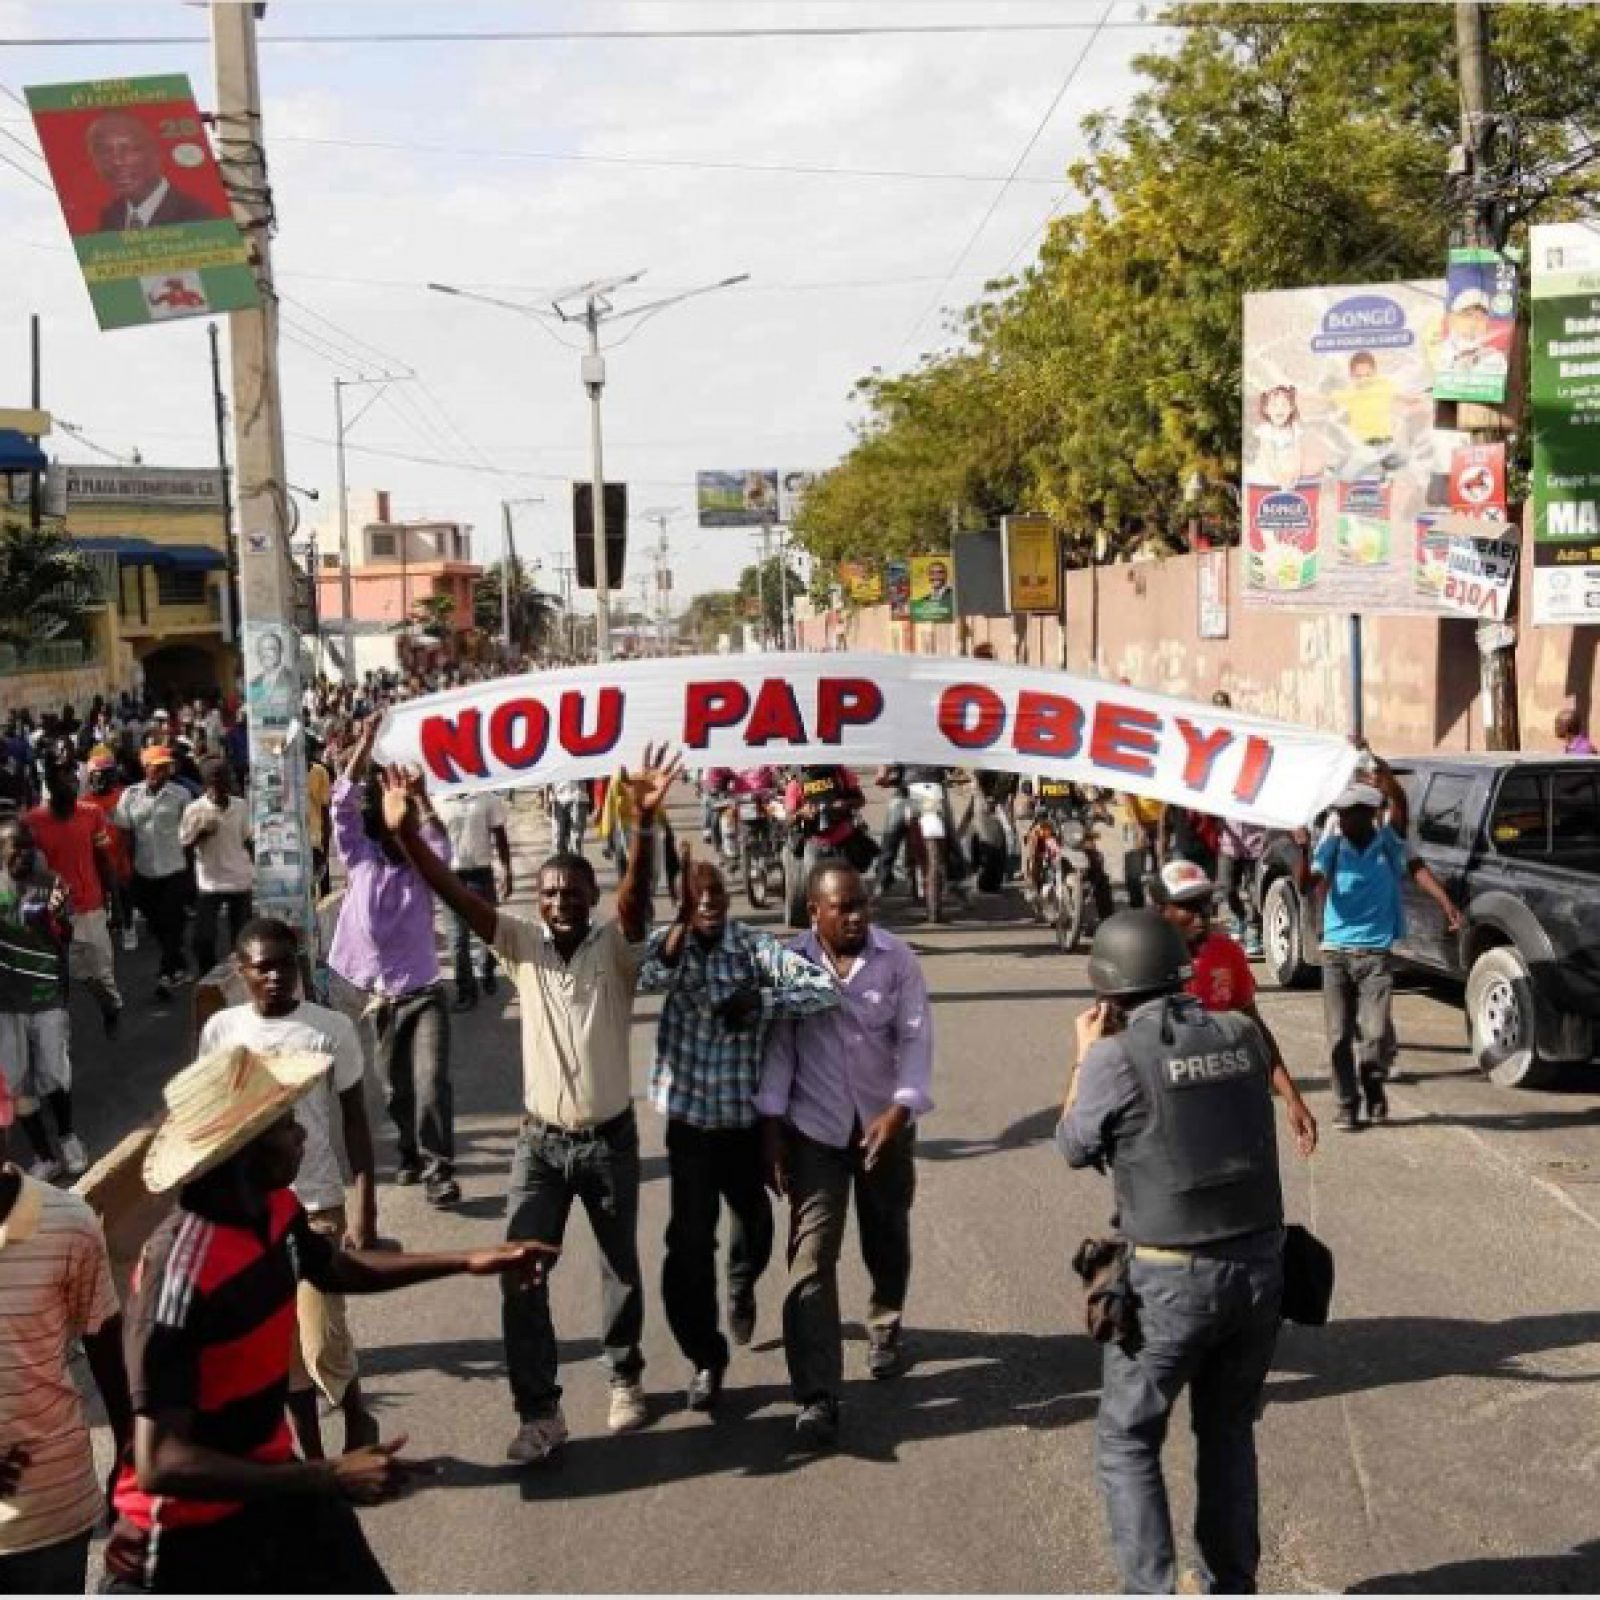 Imagen destacada: Frente 3 de Fevereiro, Nou Pap Obeyi [No Vamos a Obedecer], acción, 2015. Foto: Daniel Lima.